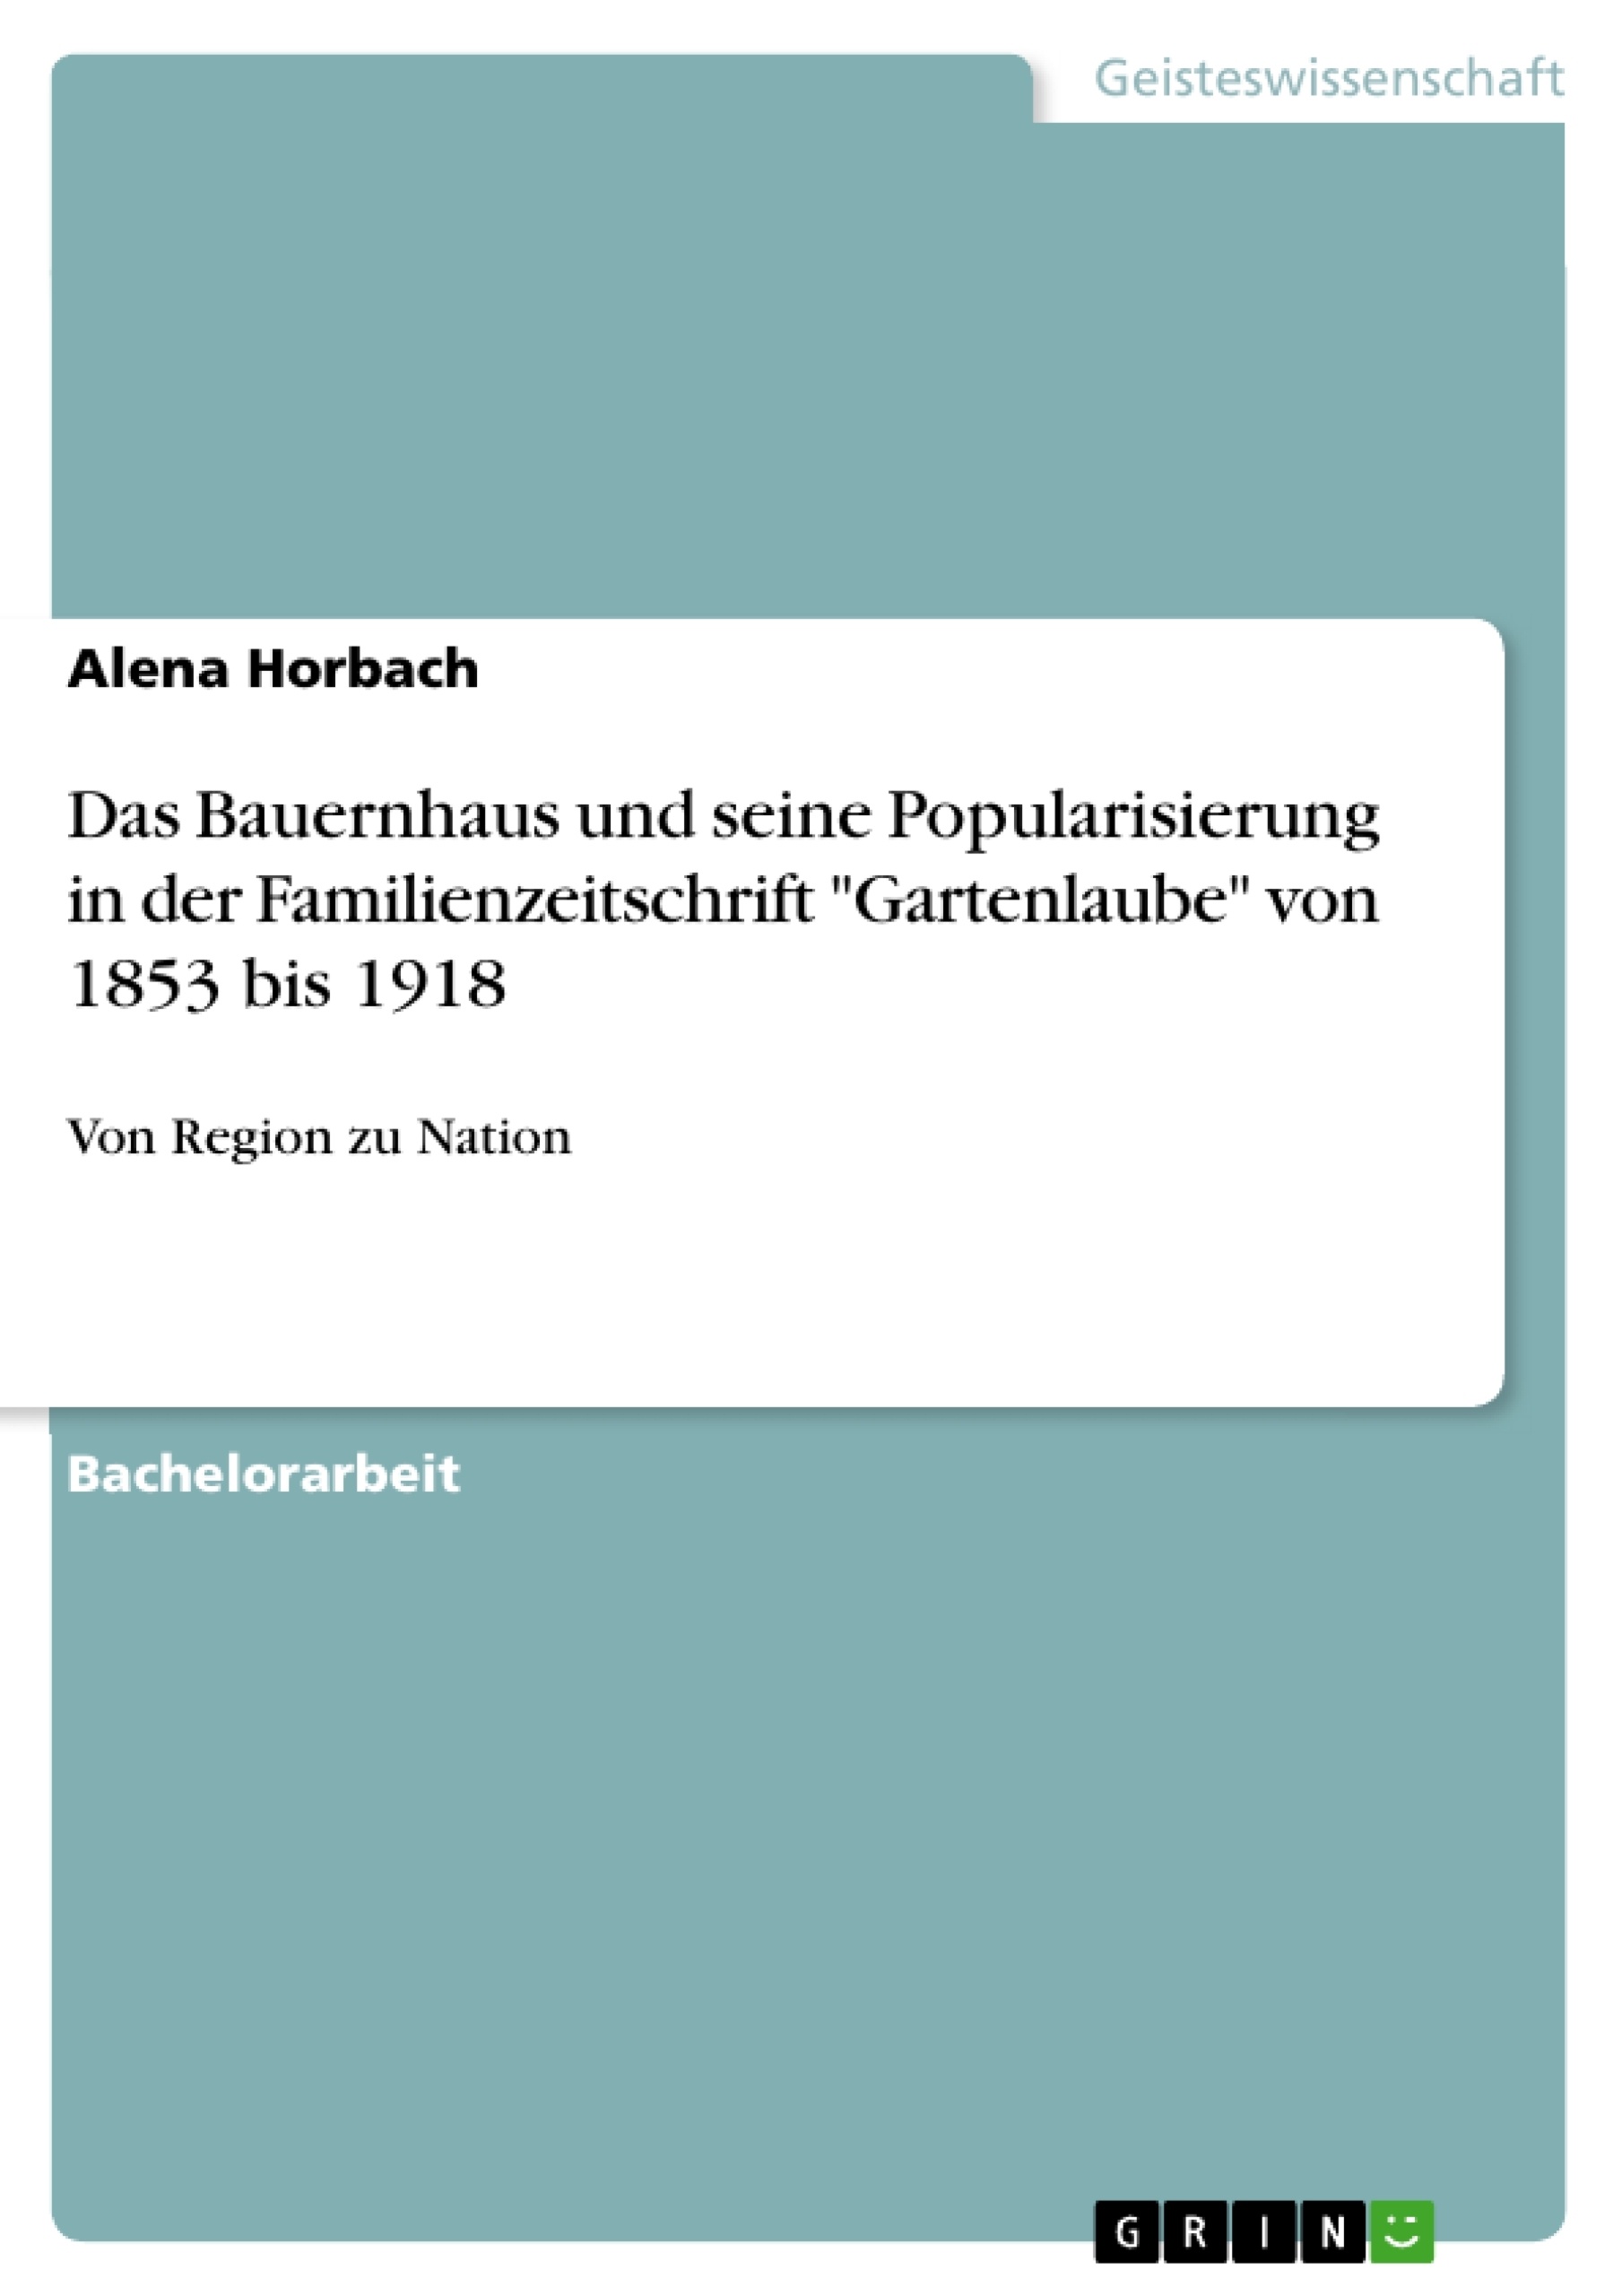 Titel: Das Bauernhaus und seine Popularisierung in der Familienzeitschrift "Gartenlaube" von 1853 bis 1918